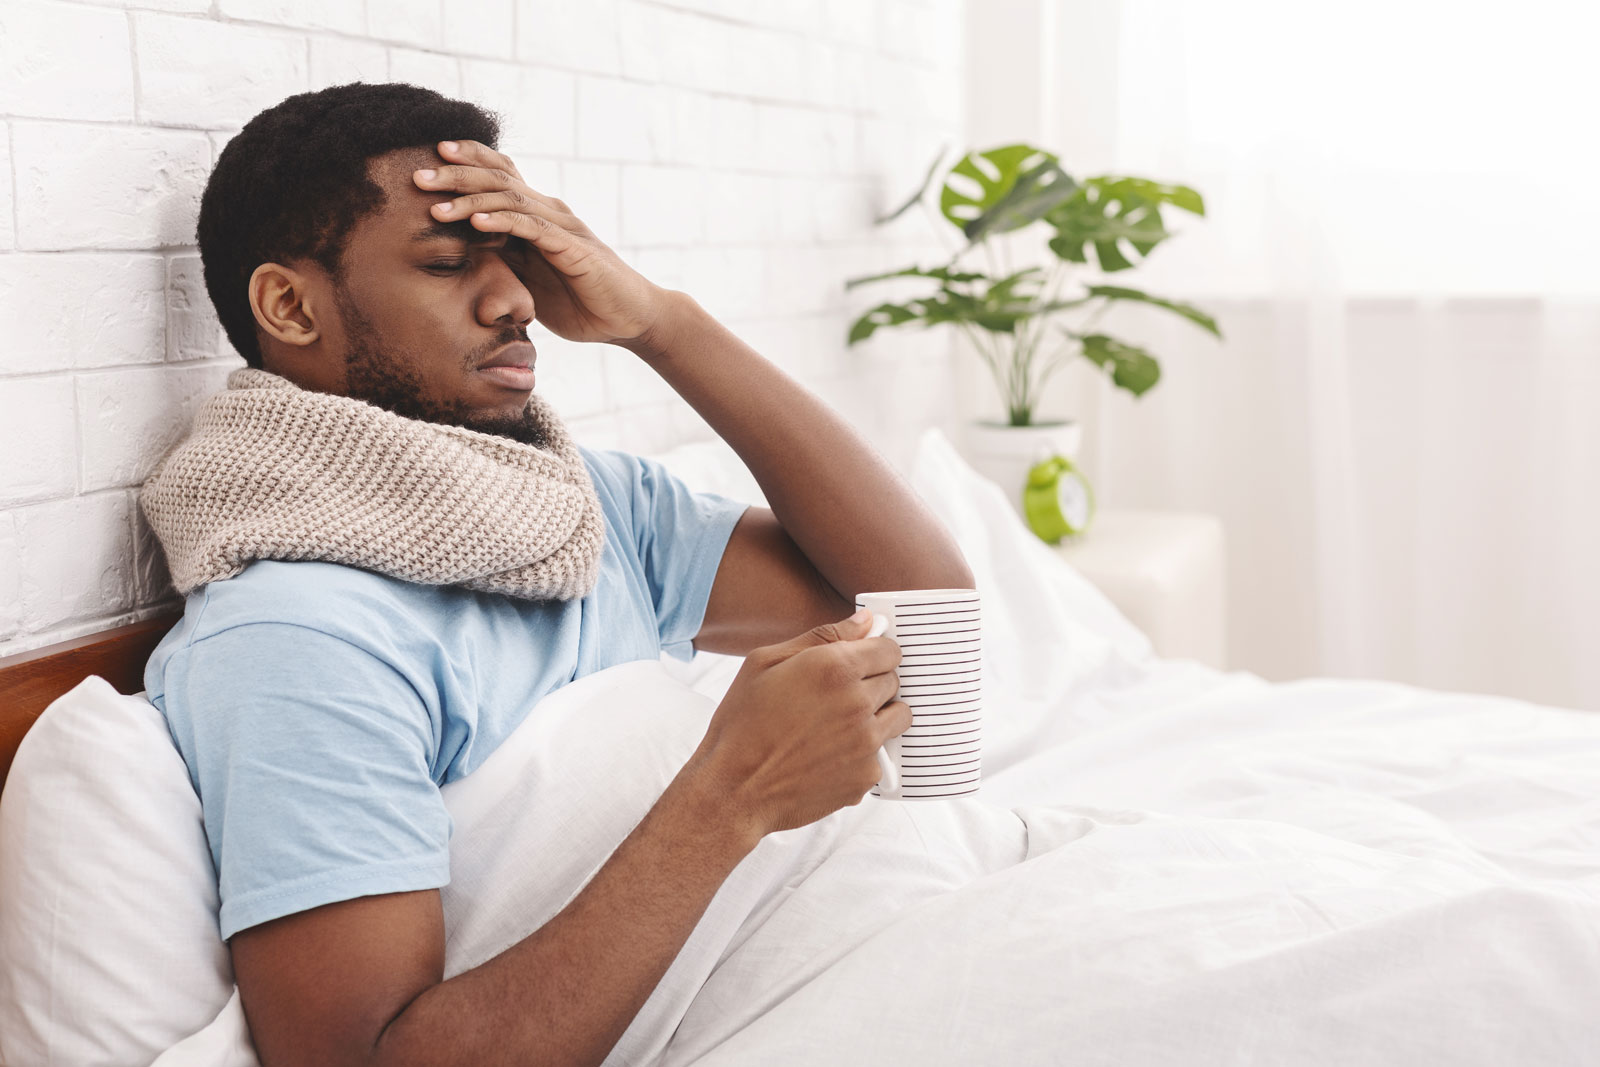 Flu Season is creeping in: Can CBD help?